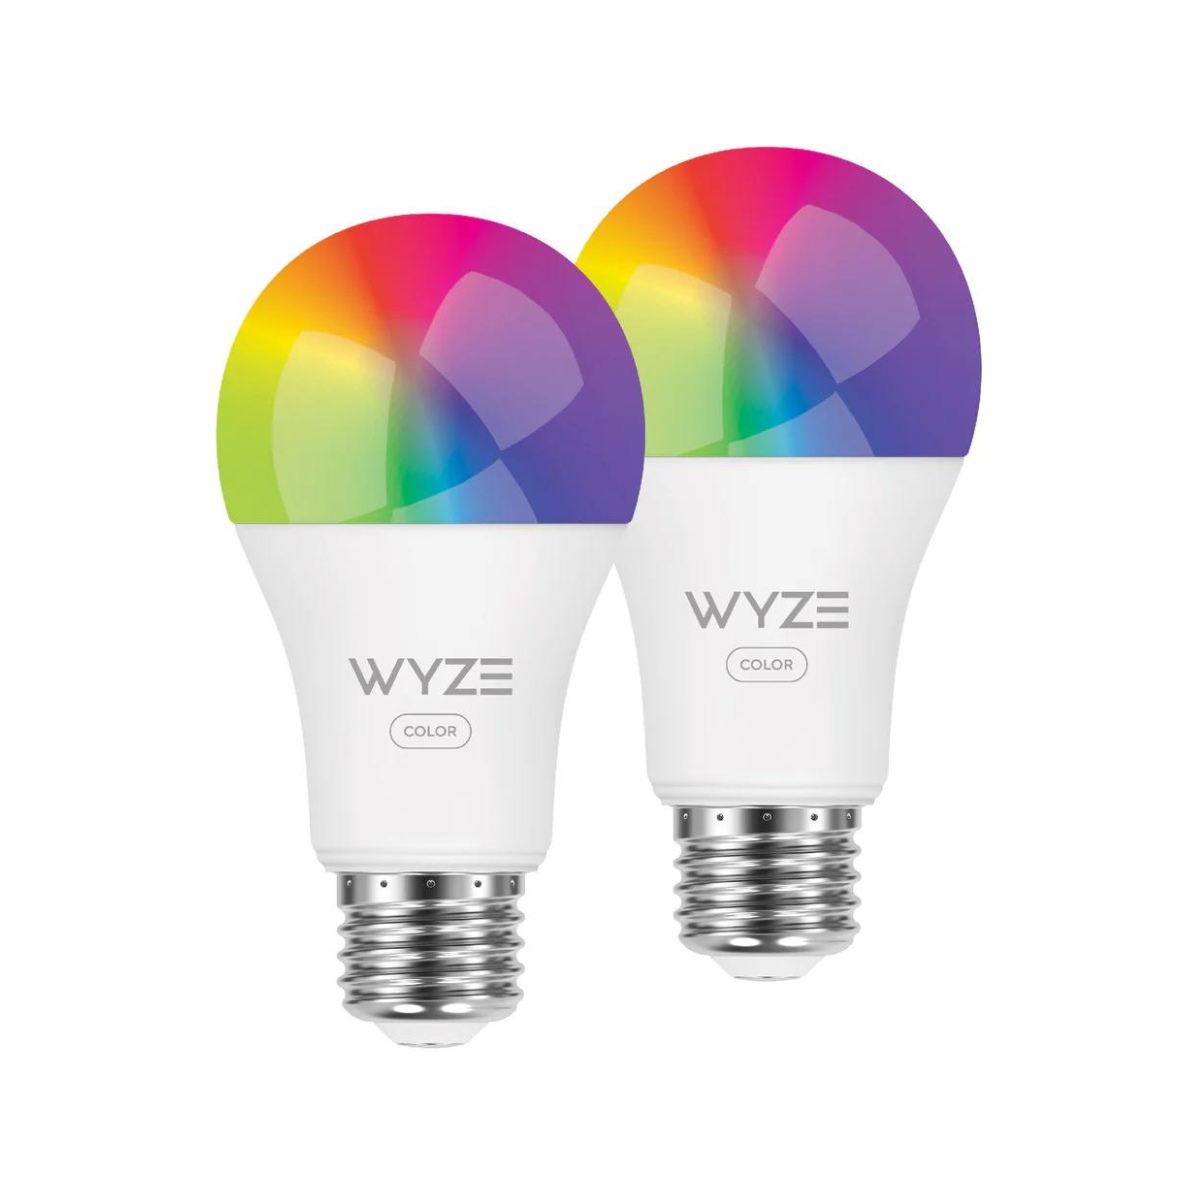 The Wyze Bulb Color